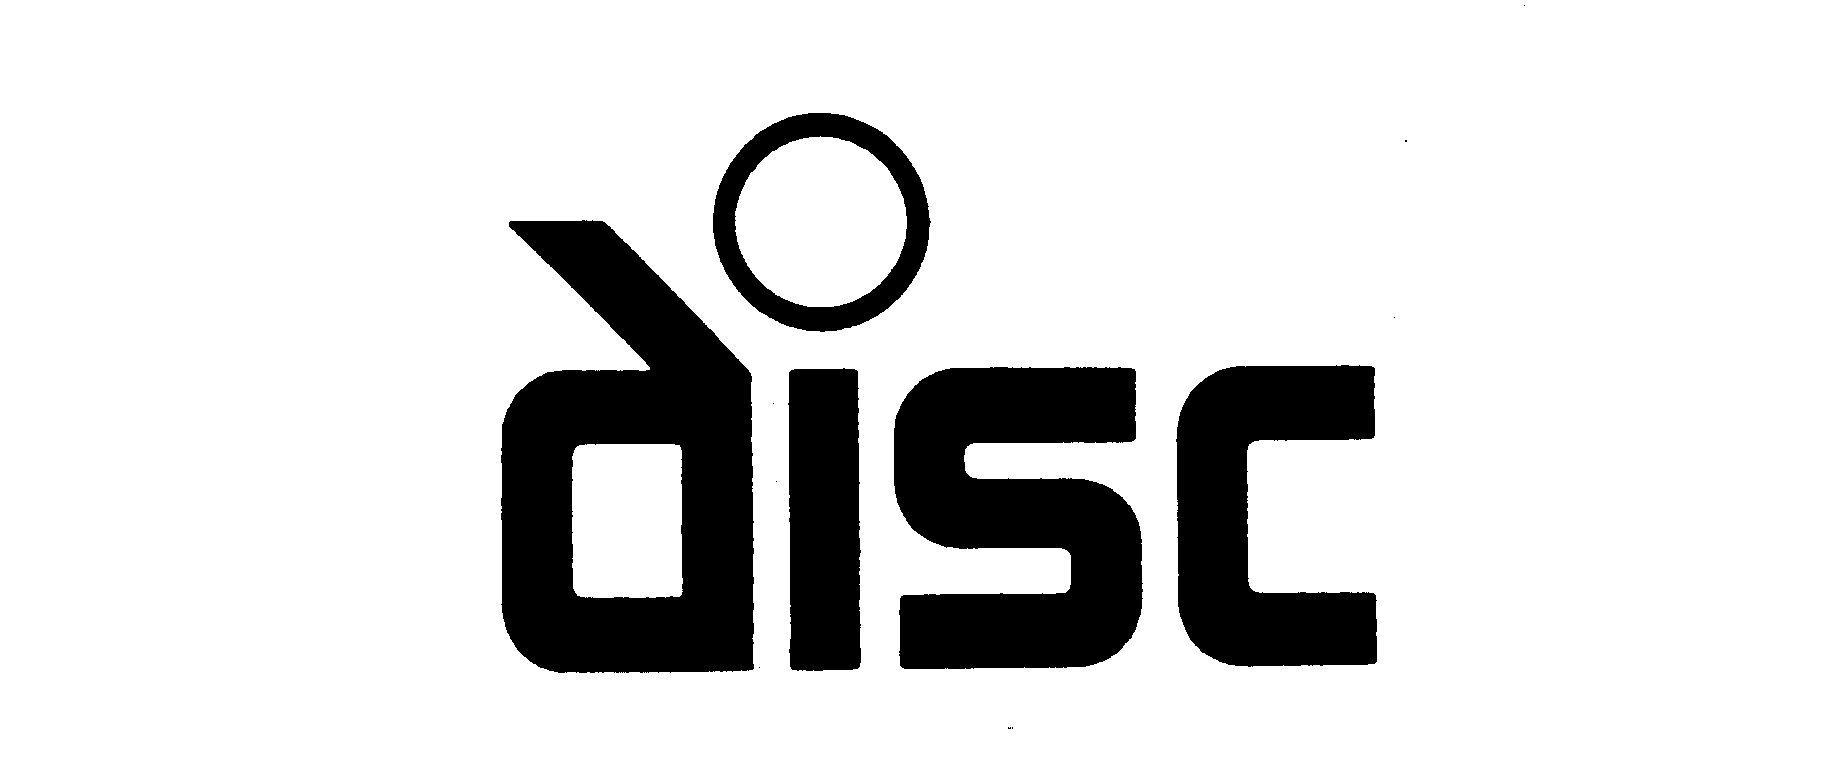 Trademark Logo DISC